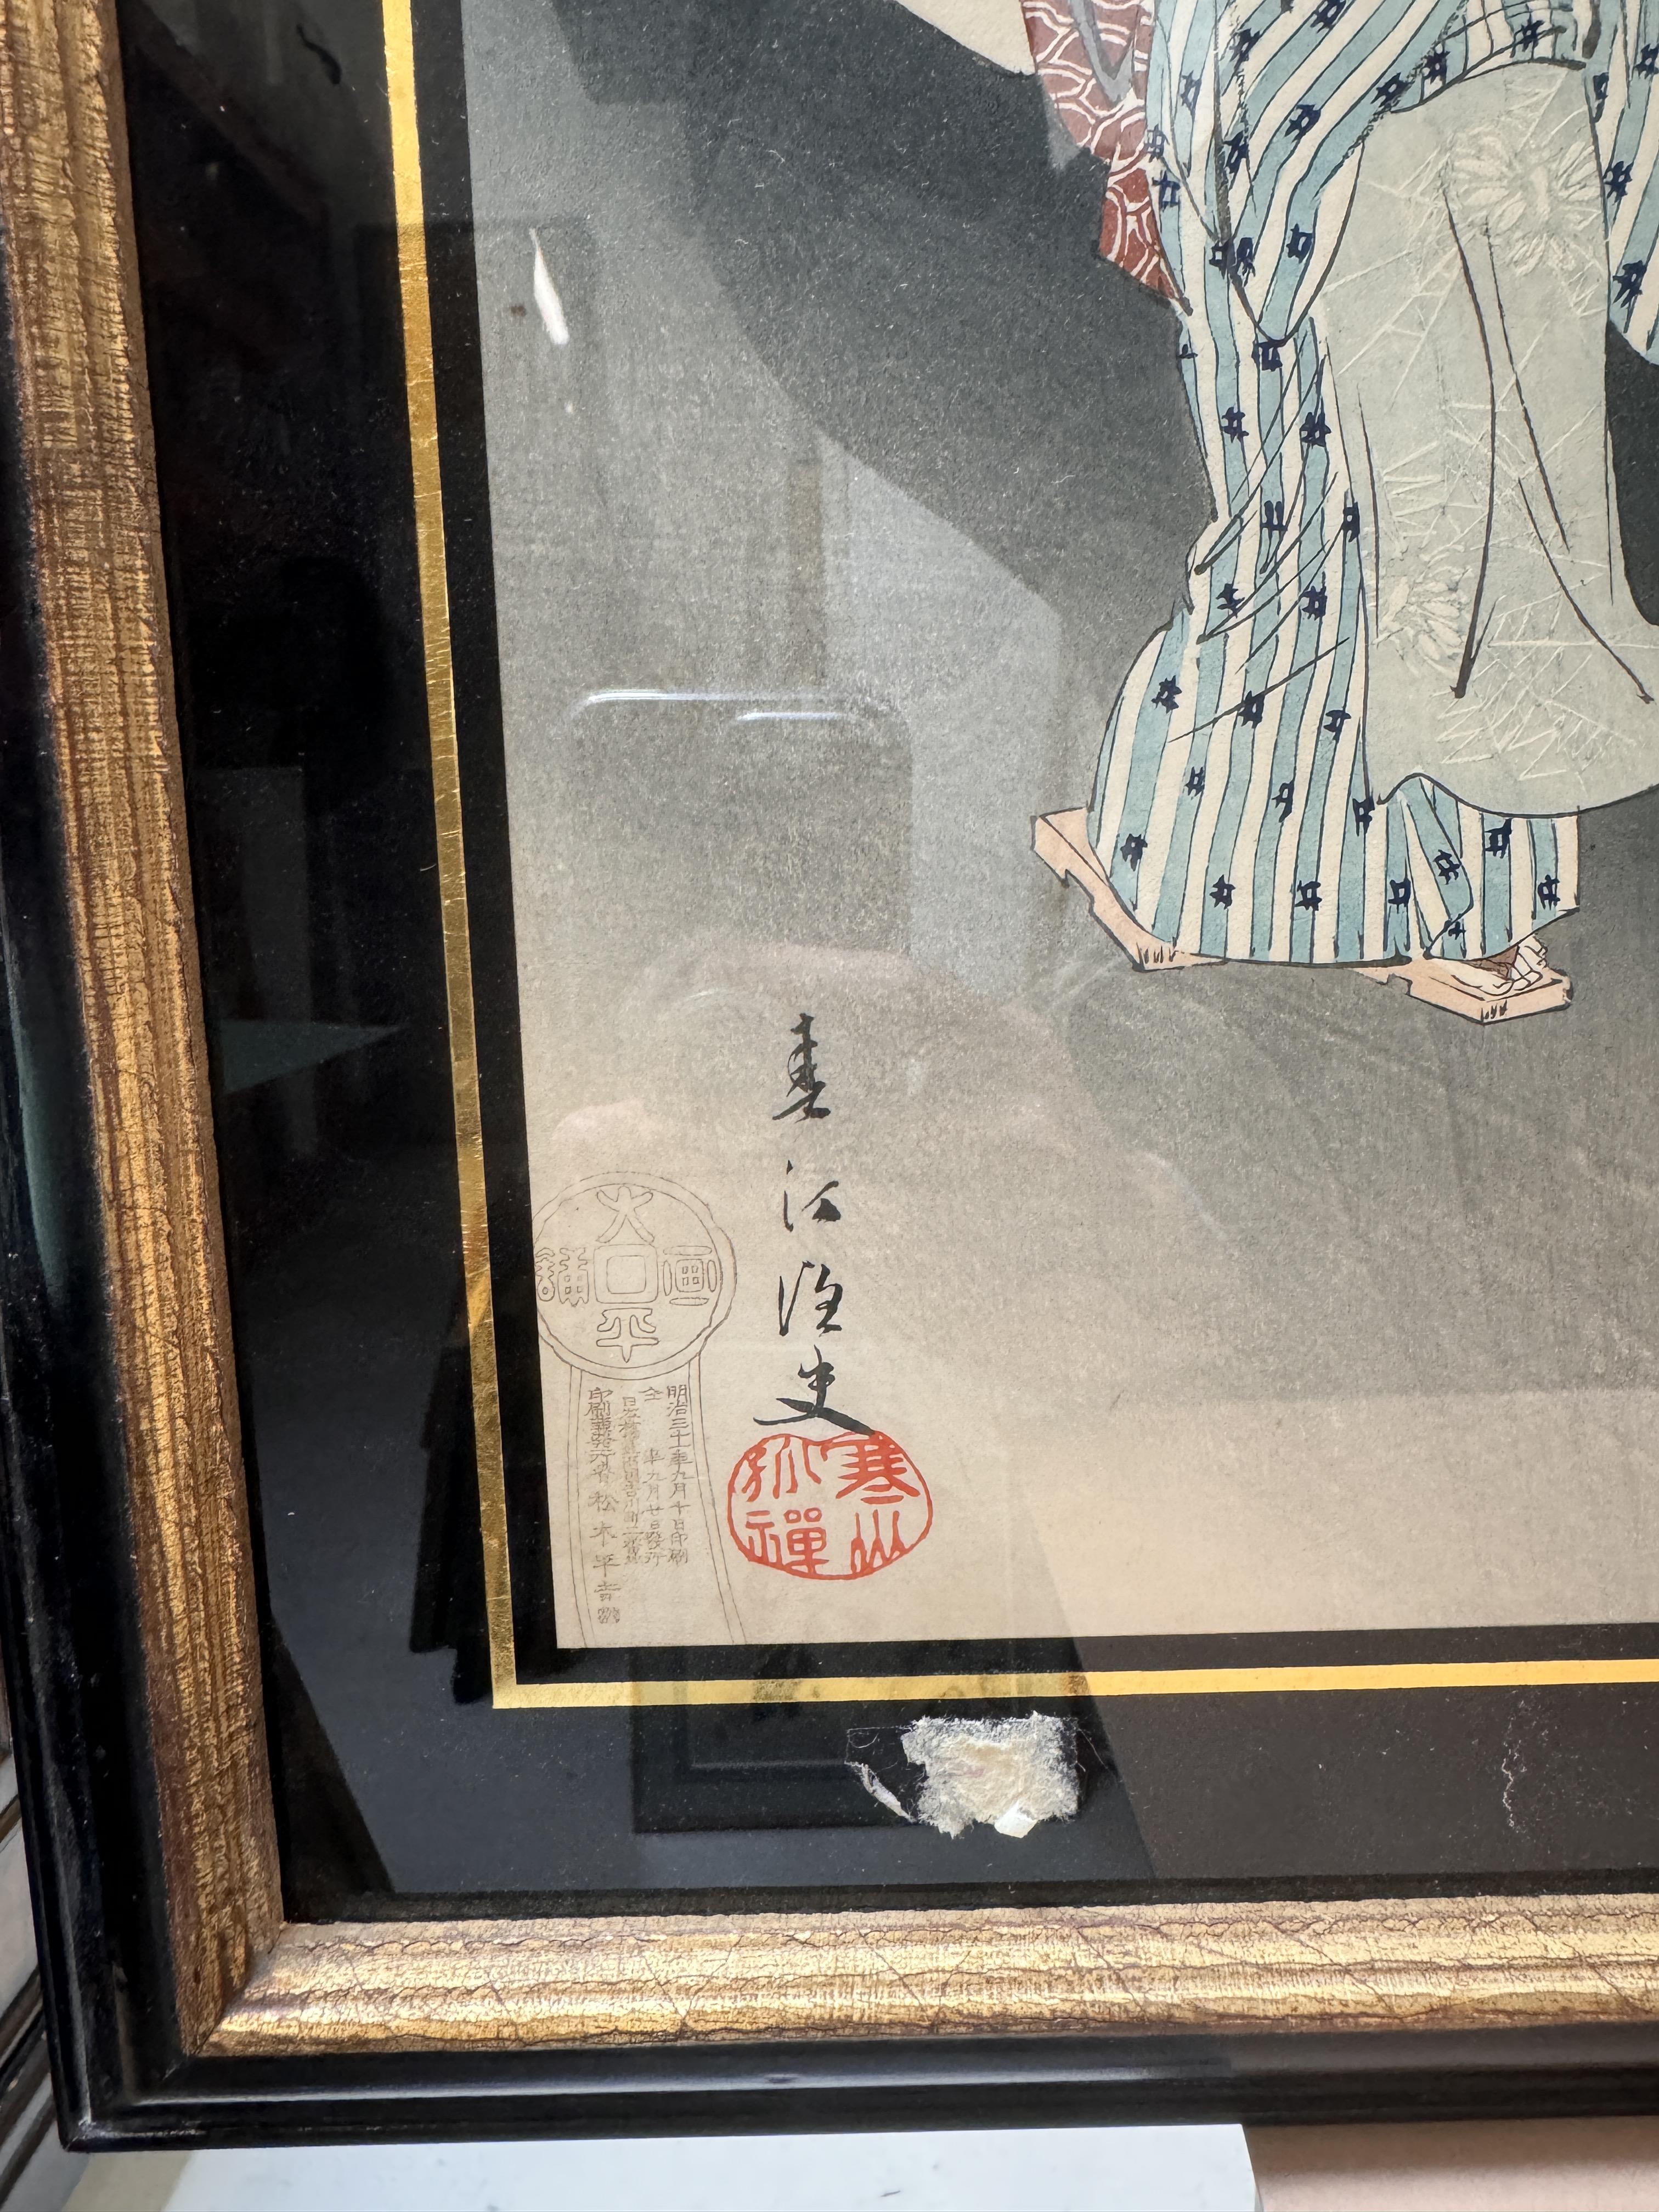 TSUKIOKA YOSHITOSHI (1797 – 1858), MIYAGAWA SHUNTEI (1873 – 1914) Two Japanese woodblock print tript - Image 7 of 23